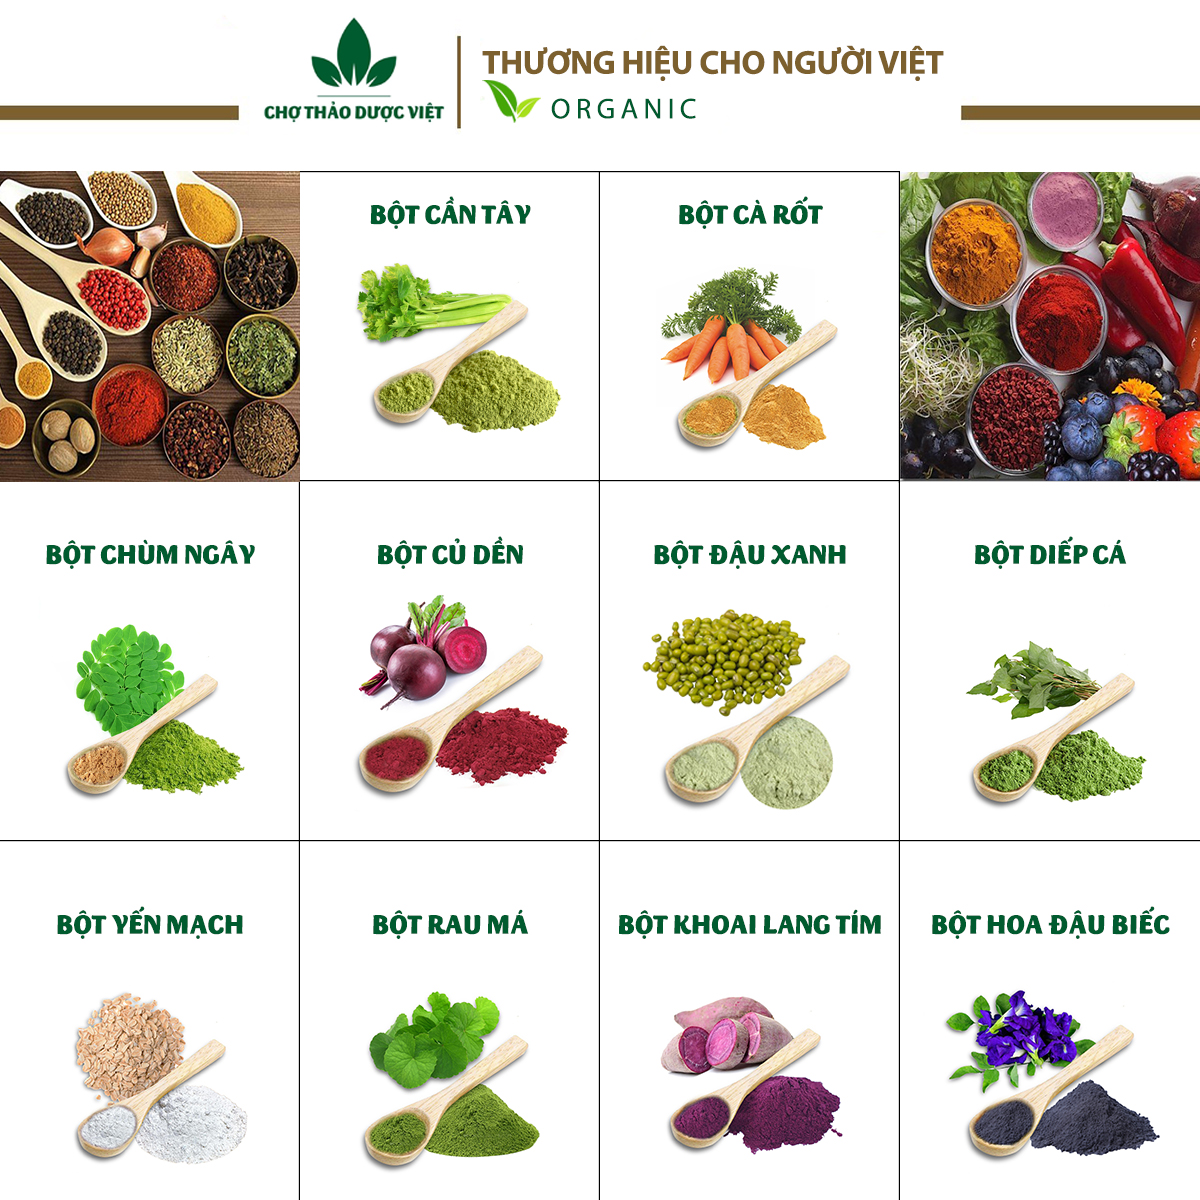 Set 10 loại bột ăn dặm dinh dưỡng hữu cơ (Bột nấu cháo tạo màu hương vị cho món ăn)  - Chợ Thảo Dược Việt